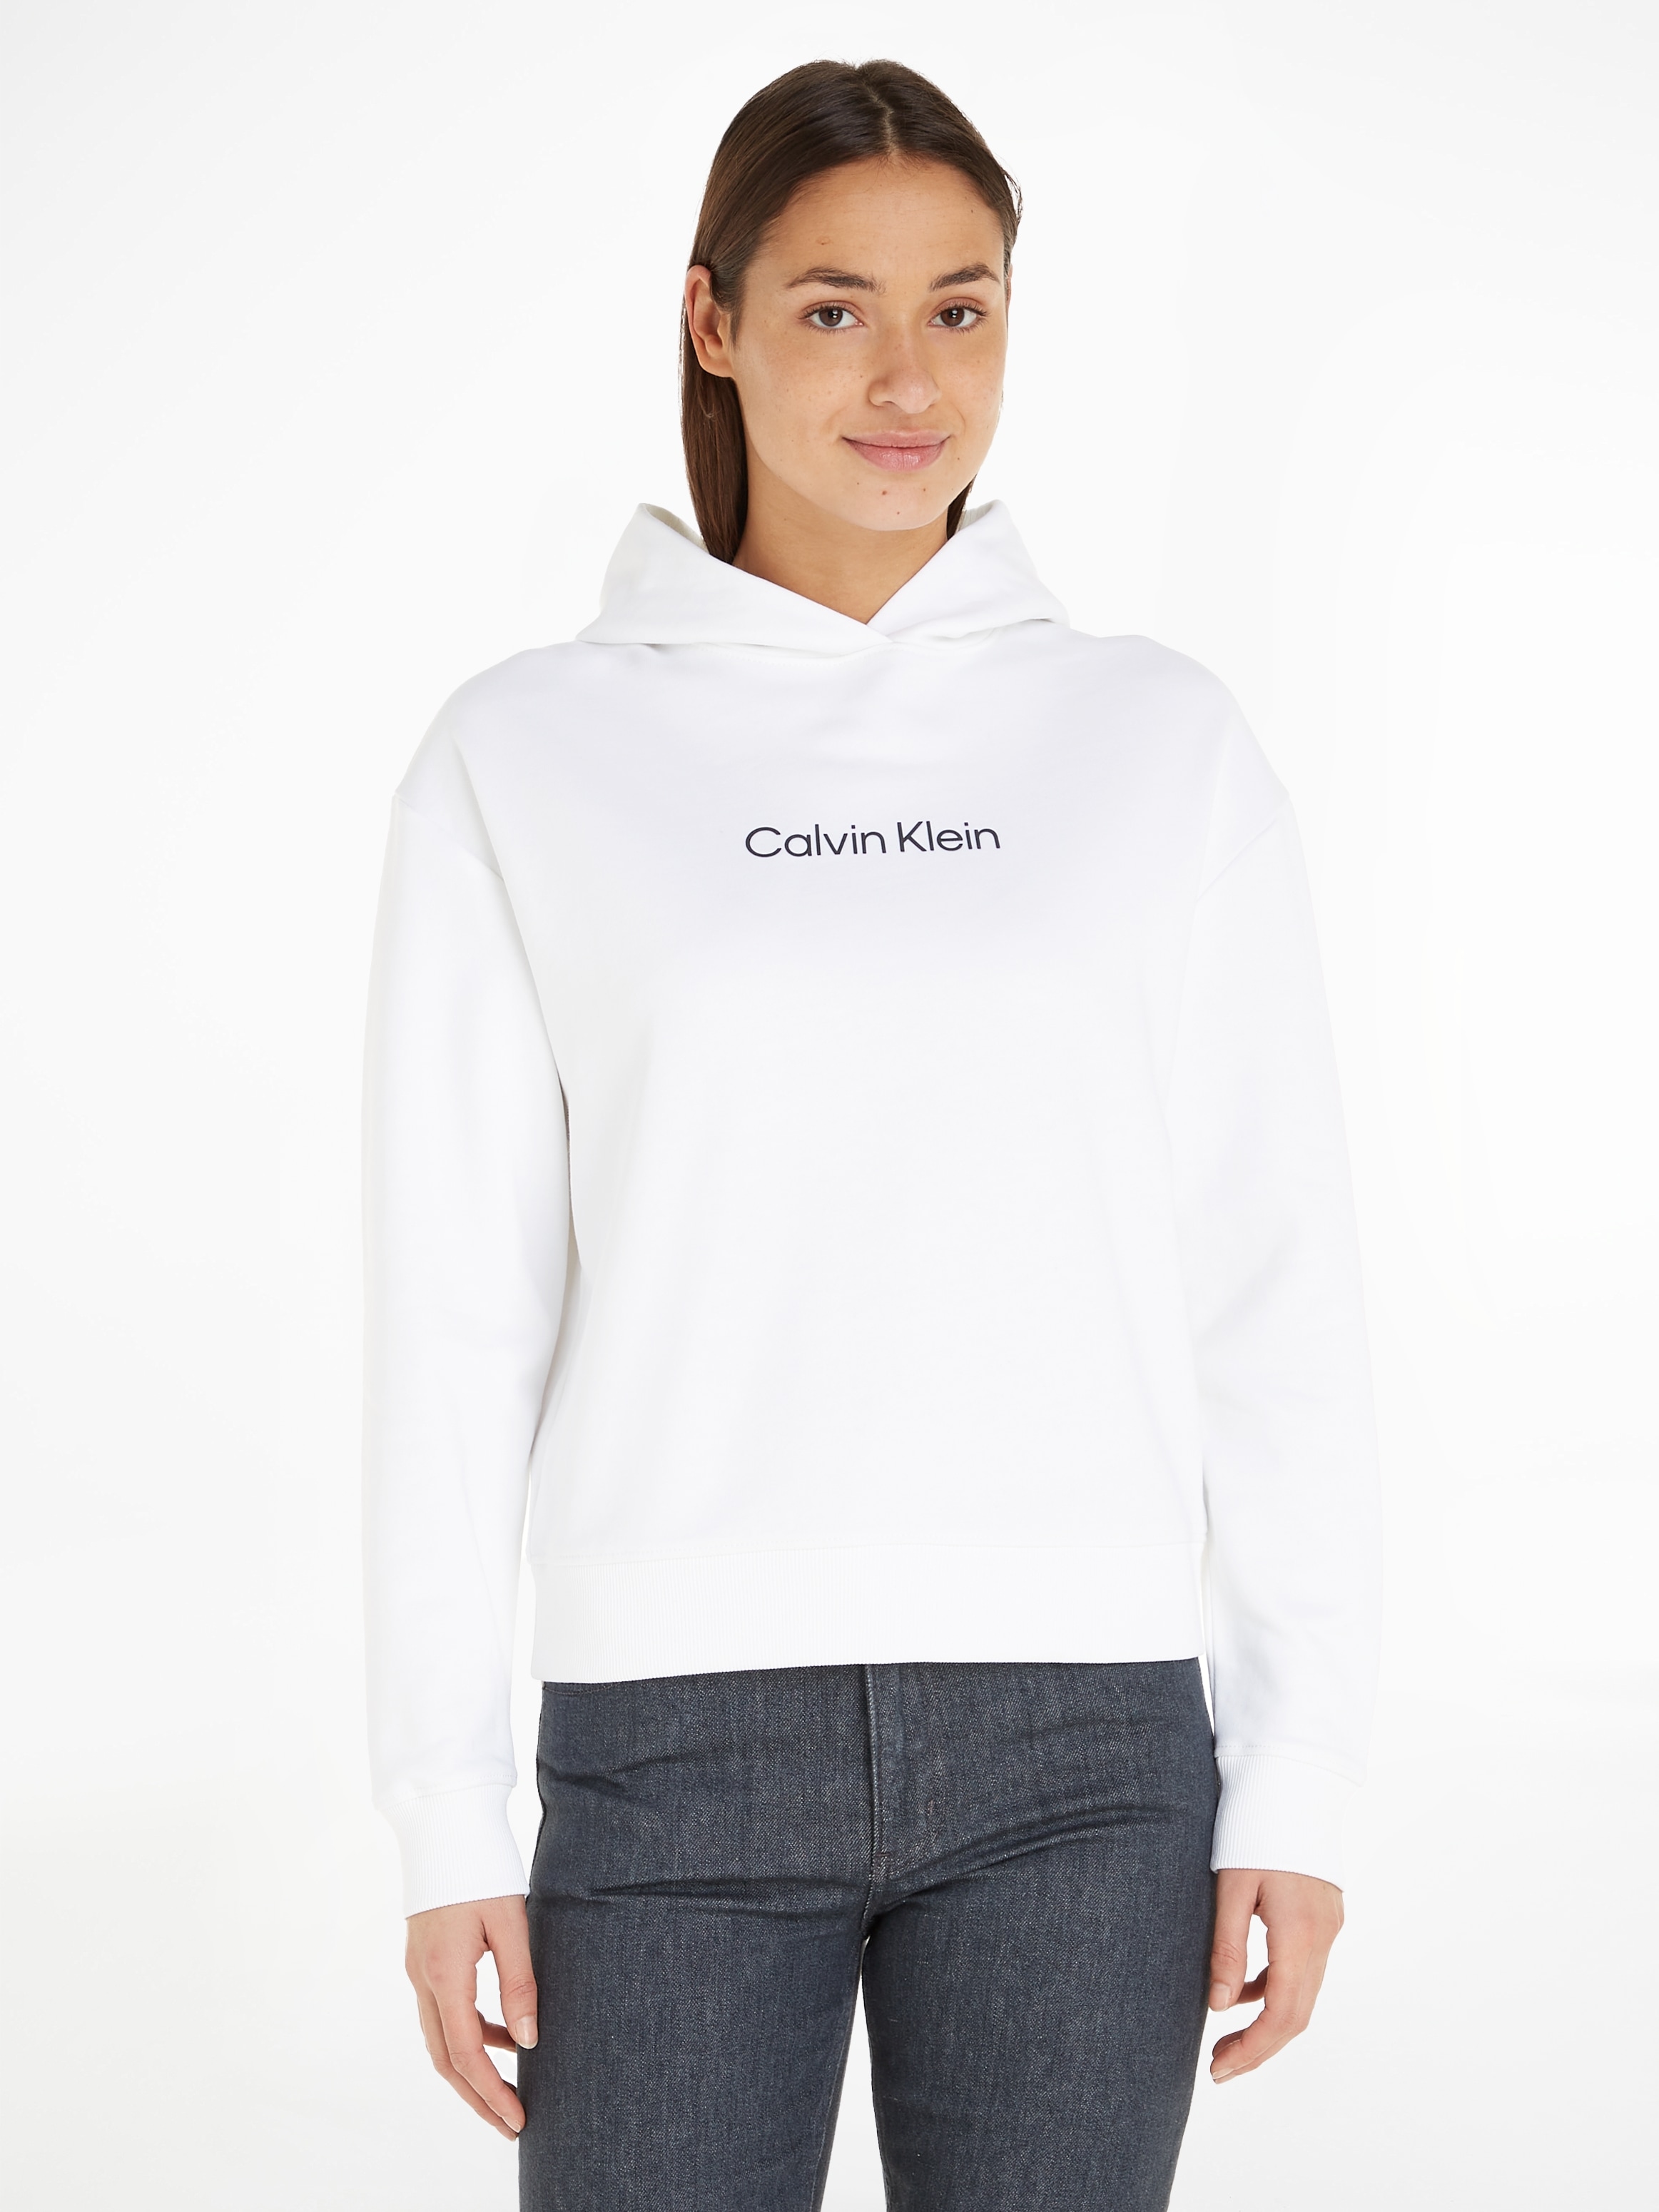 Brust Logo LOGO bei mit ♕ Kapuzensweatshirt Klein Calvin »HERO Klein Calvin auf HOODY«, der